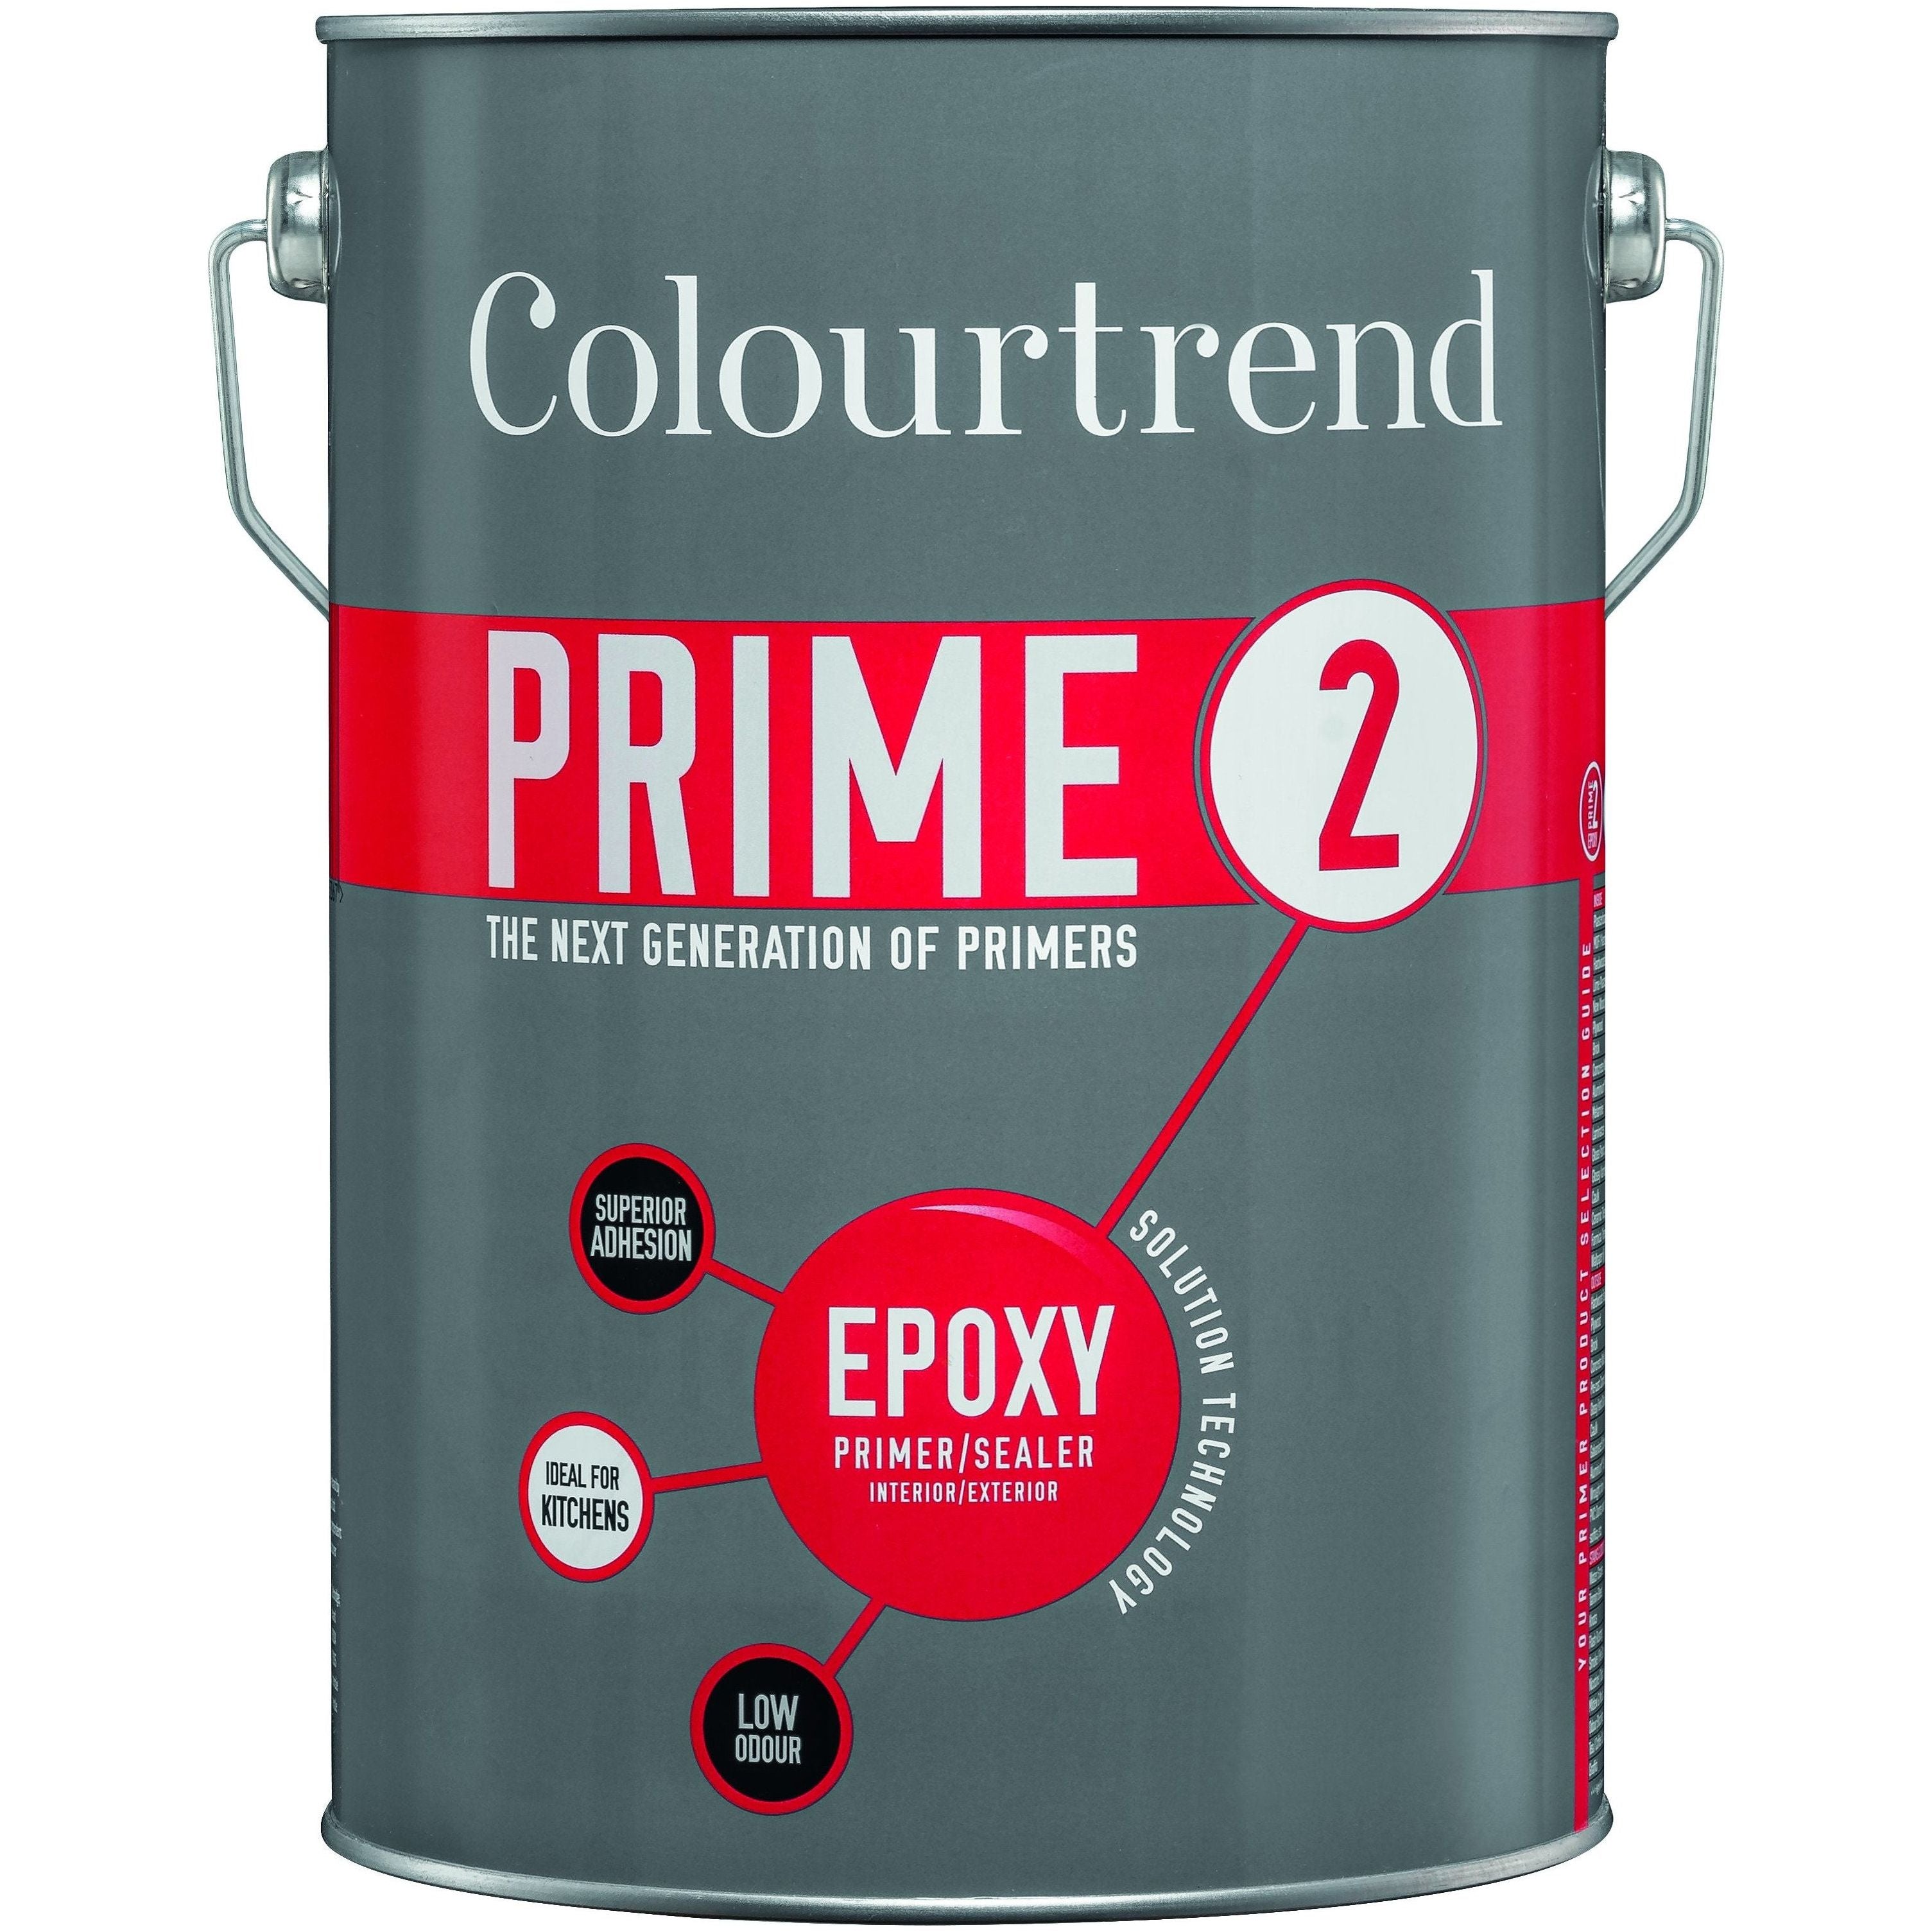 Colourtrend Prime 2 Epoxy Primer